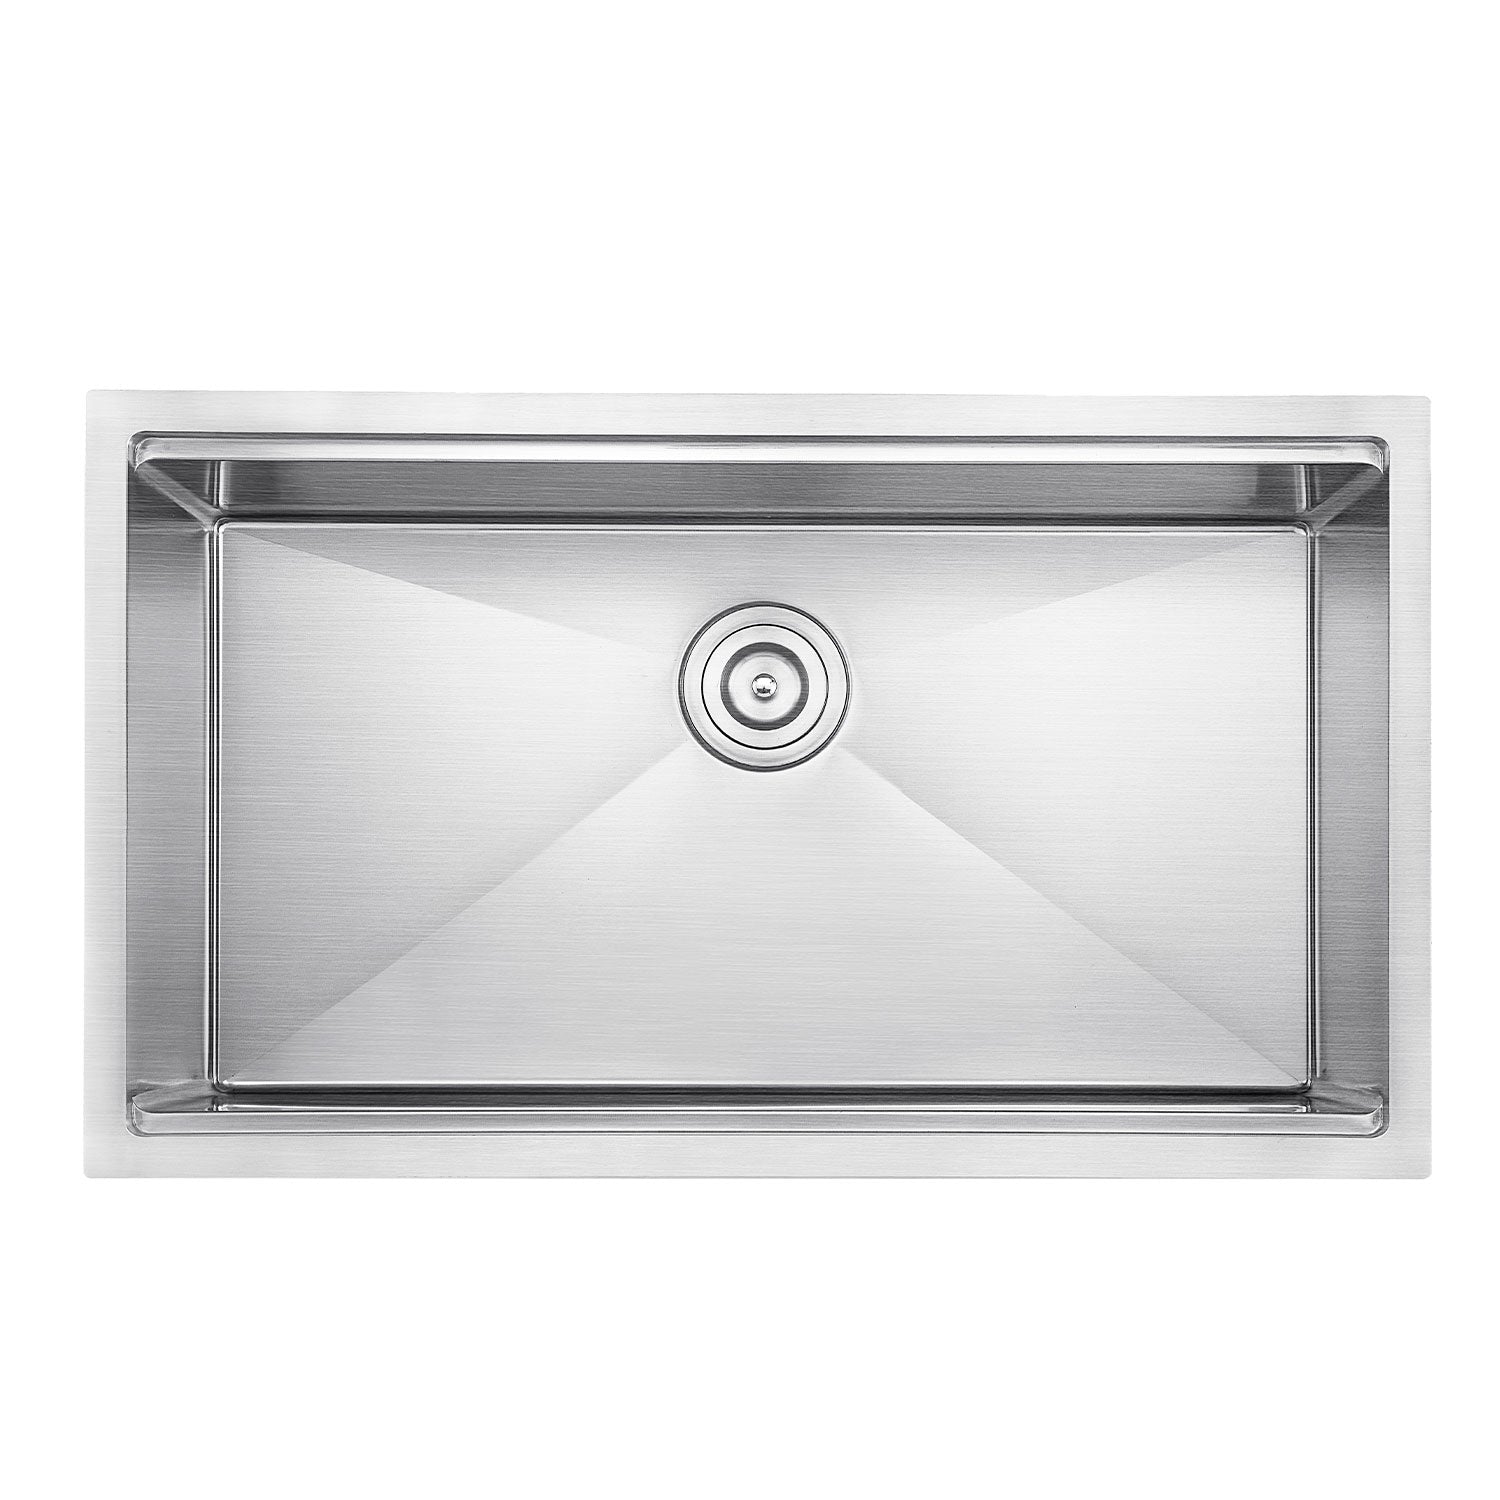 DAX Workstation Undermount Single Bowl Kitchen Sink - Handmade - Stainless Steel 304 -16 Gauge - Accessories Included (DAX-WS3219-R10)